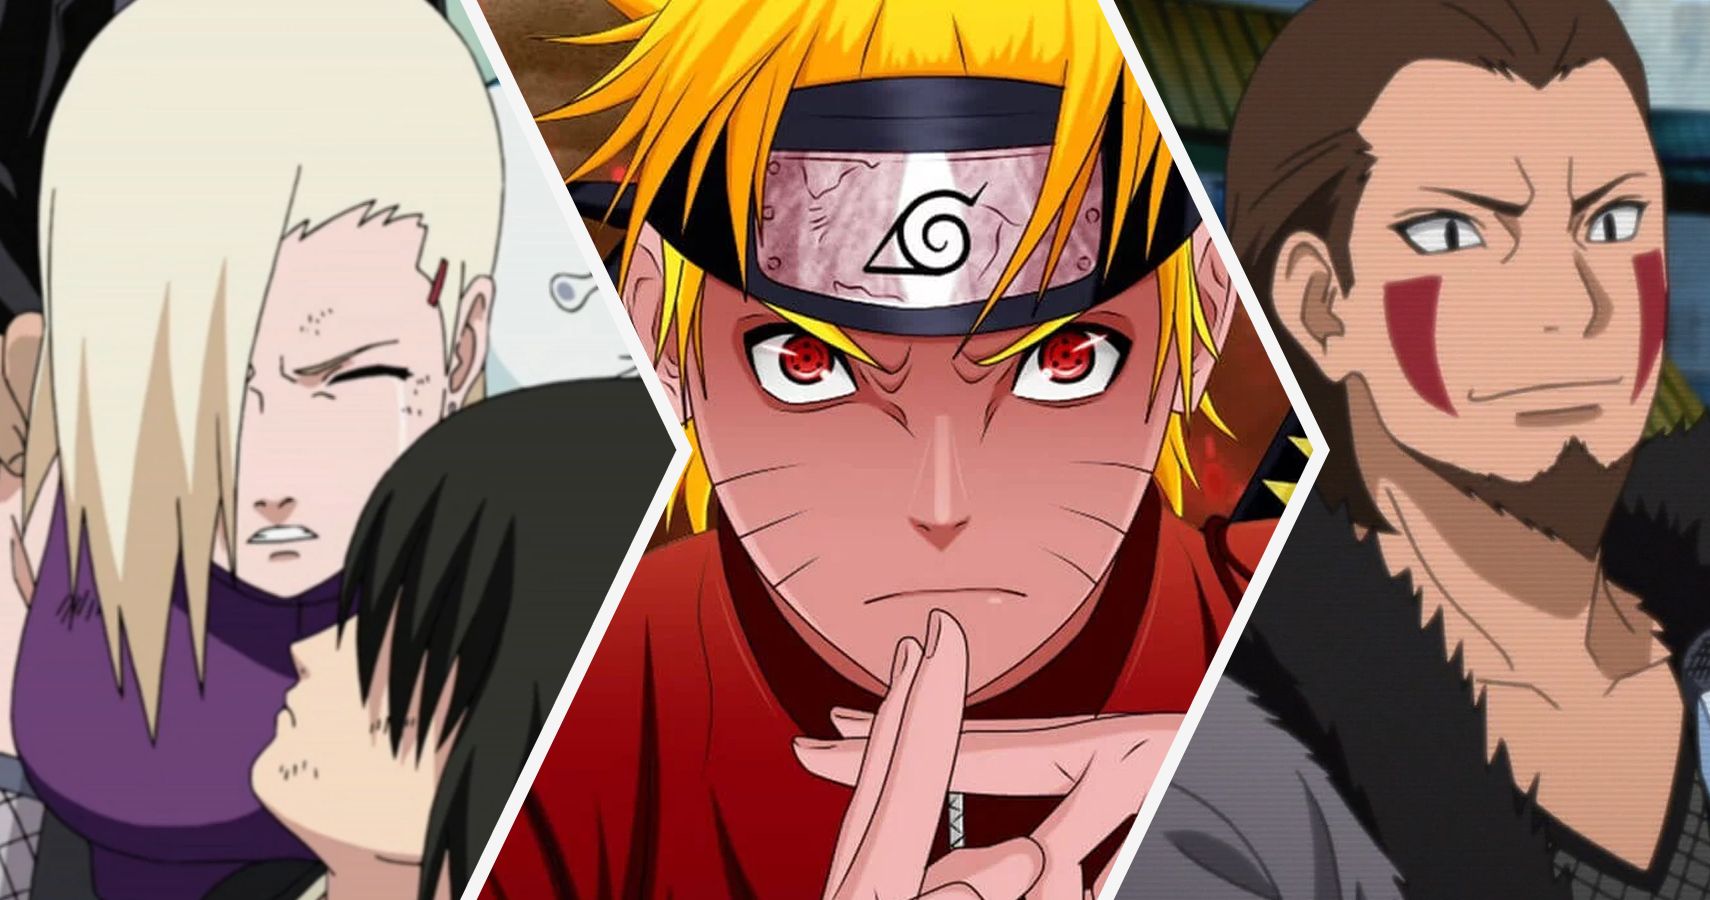 Naruto Shippuden [2007] Season 1. 26 Episodes  Shikamaru, Shikamaru and  temari, Naruto shippuden characters